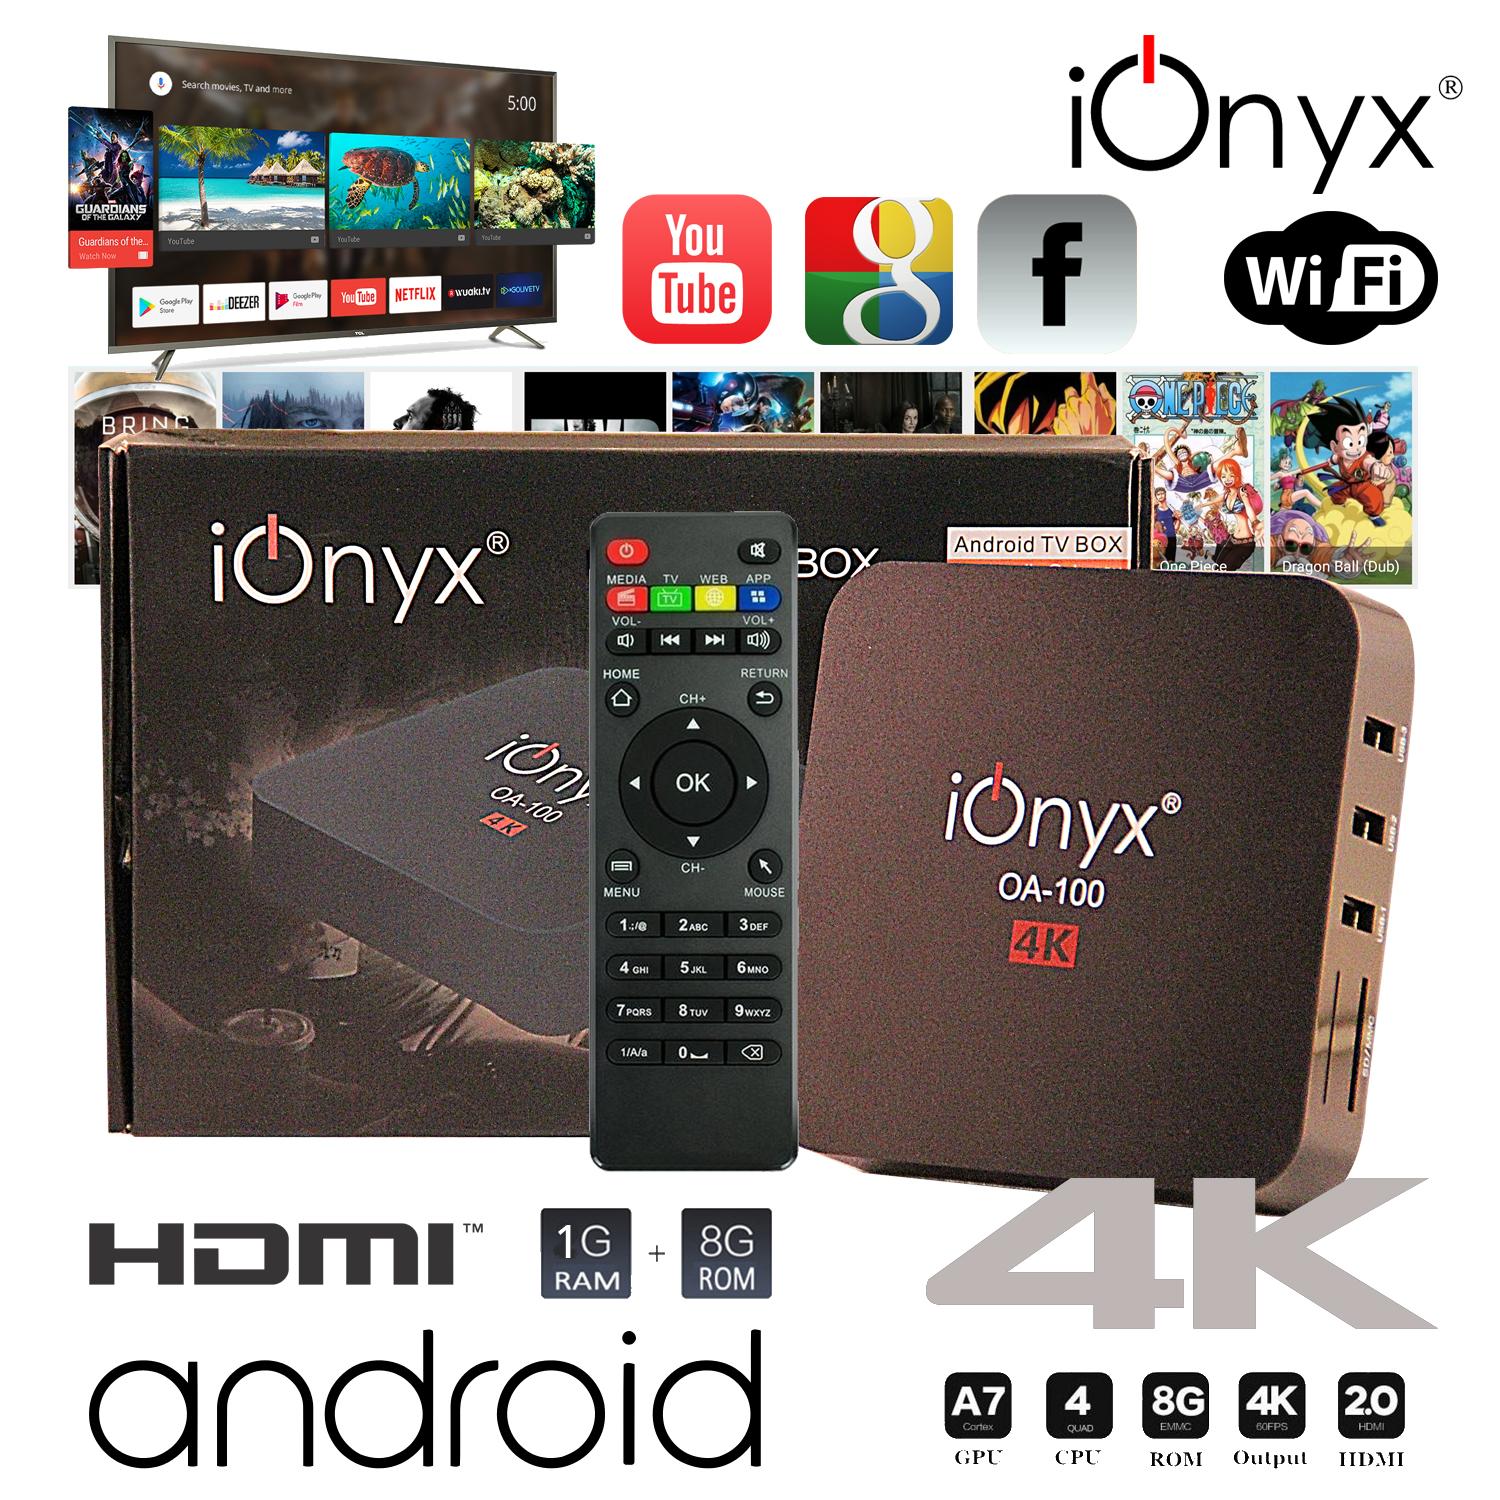 IONYX OA-100 กล่องแอนดรอยน์ สมาร์ท ทีวี ทำทีวีธรรมดาให้เป็นสมาร์ททีวี